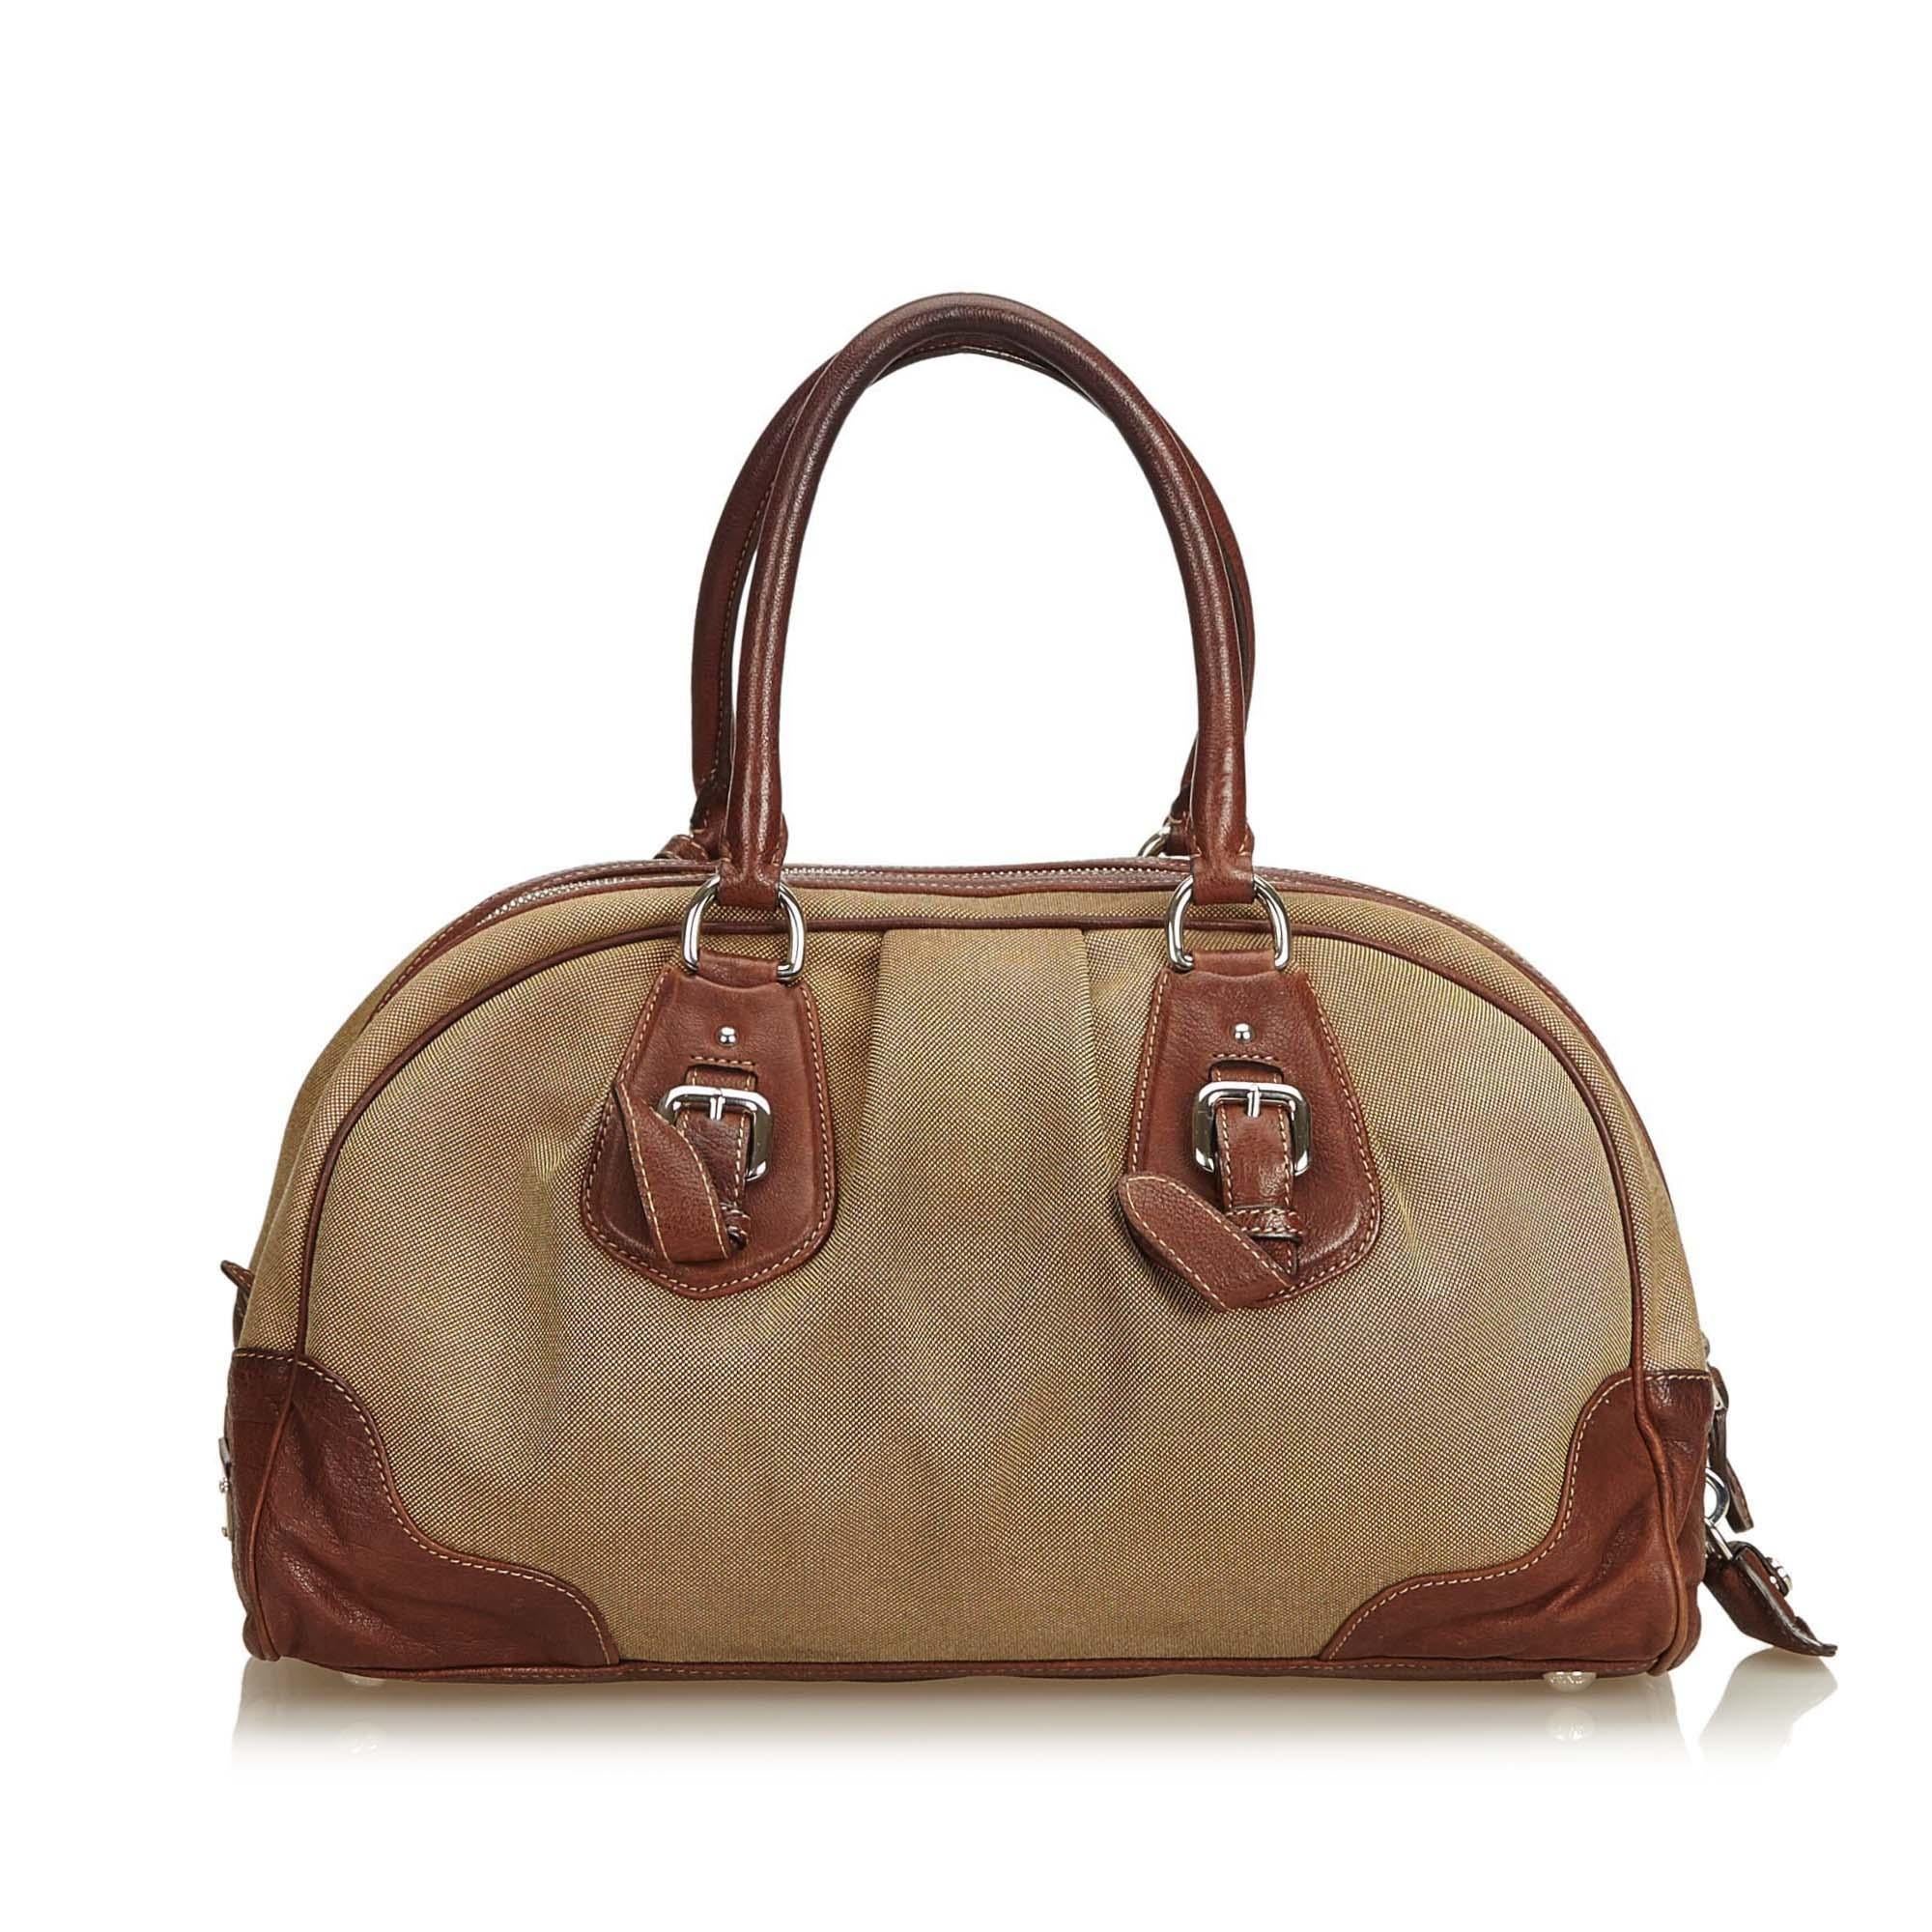 Prada Brown Canapa Canvas Handbag In Good Condition For Sale In Orlando, FL